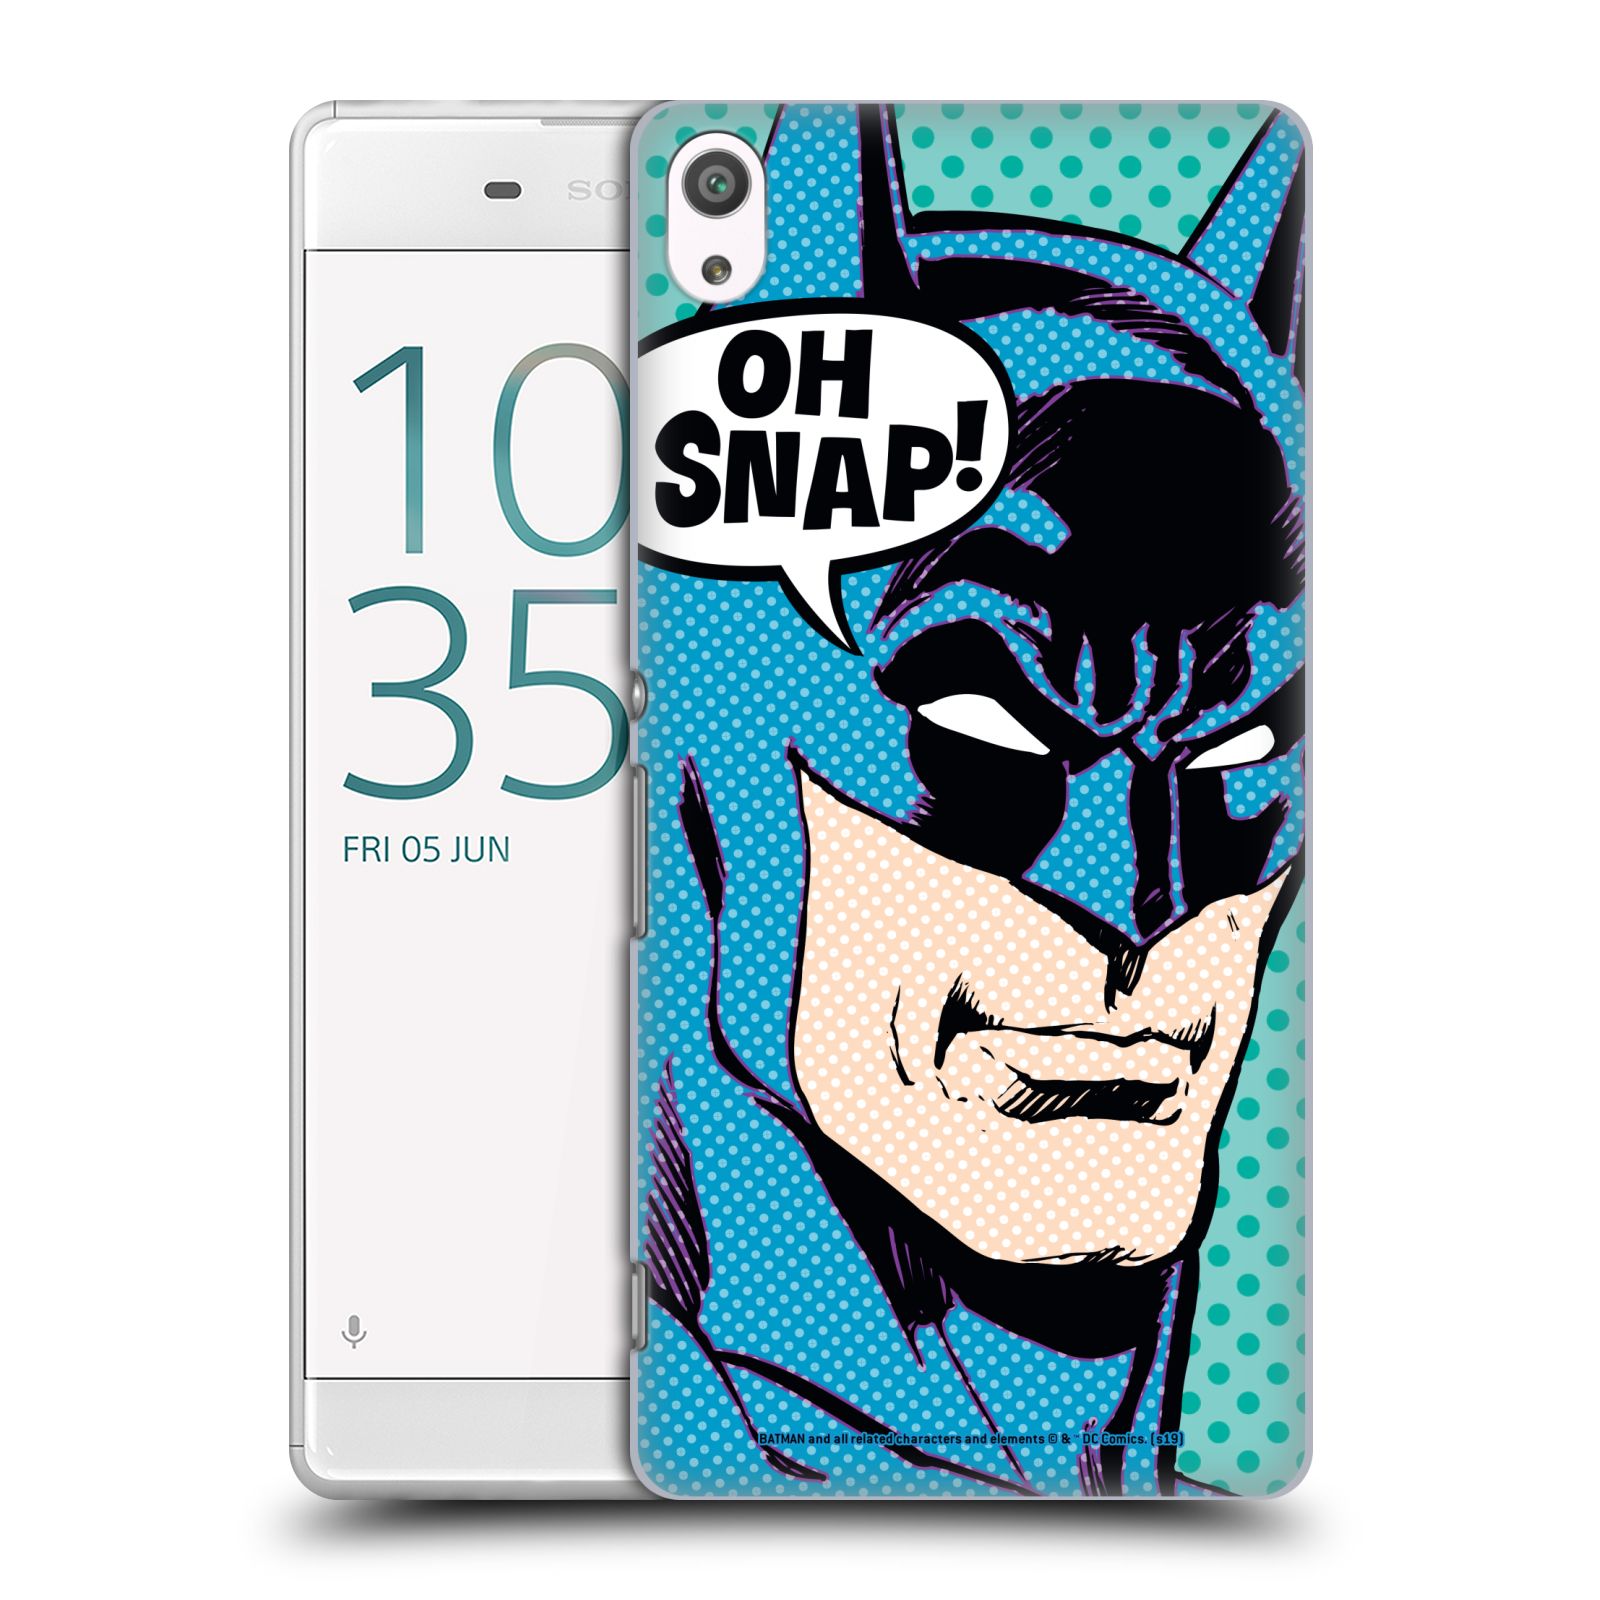 Pouzdro na mobil Sony Xperia XA ULTRA - HEAD CASE - DC komix Batman Pop Art tvář